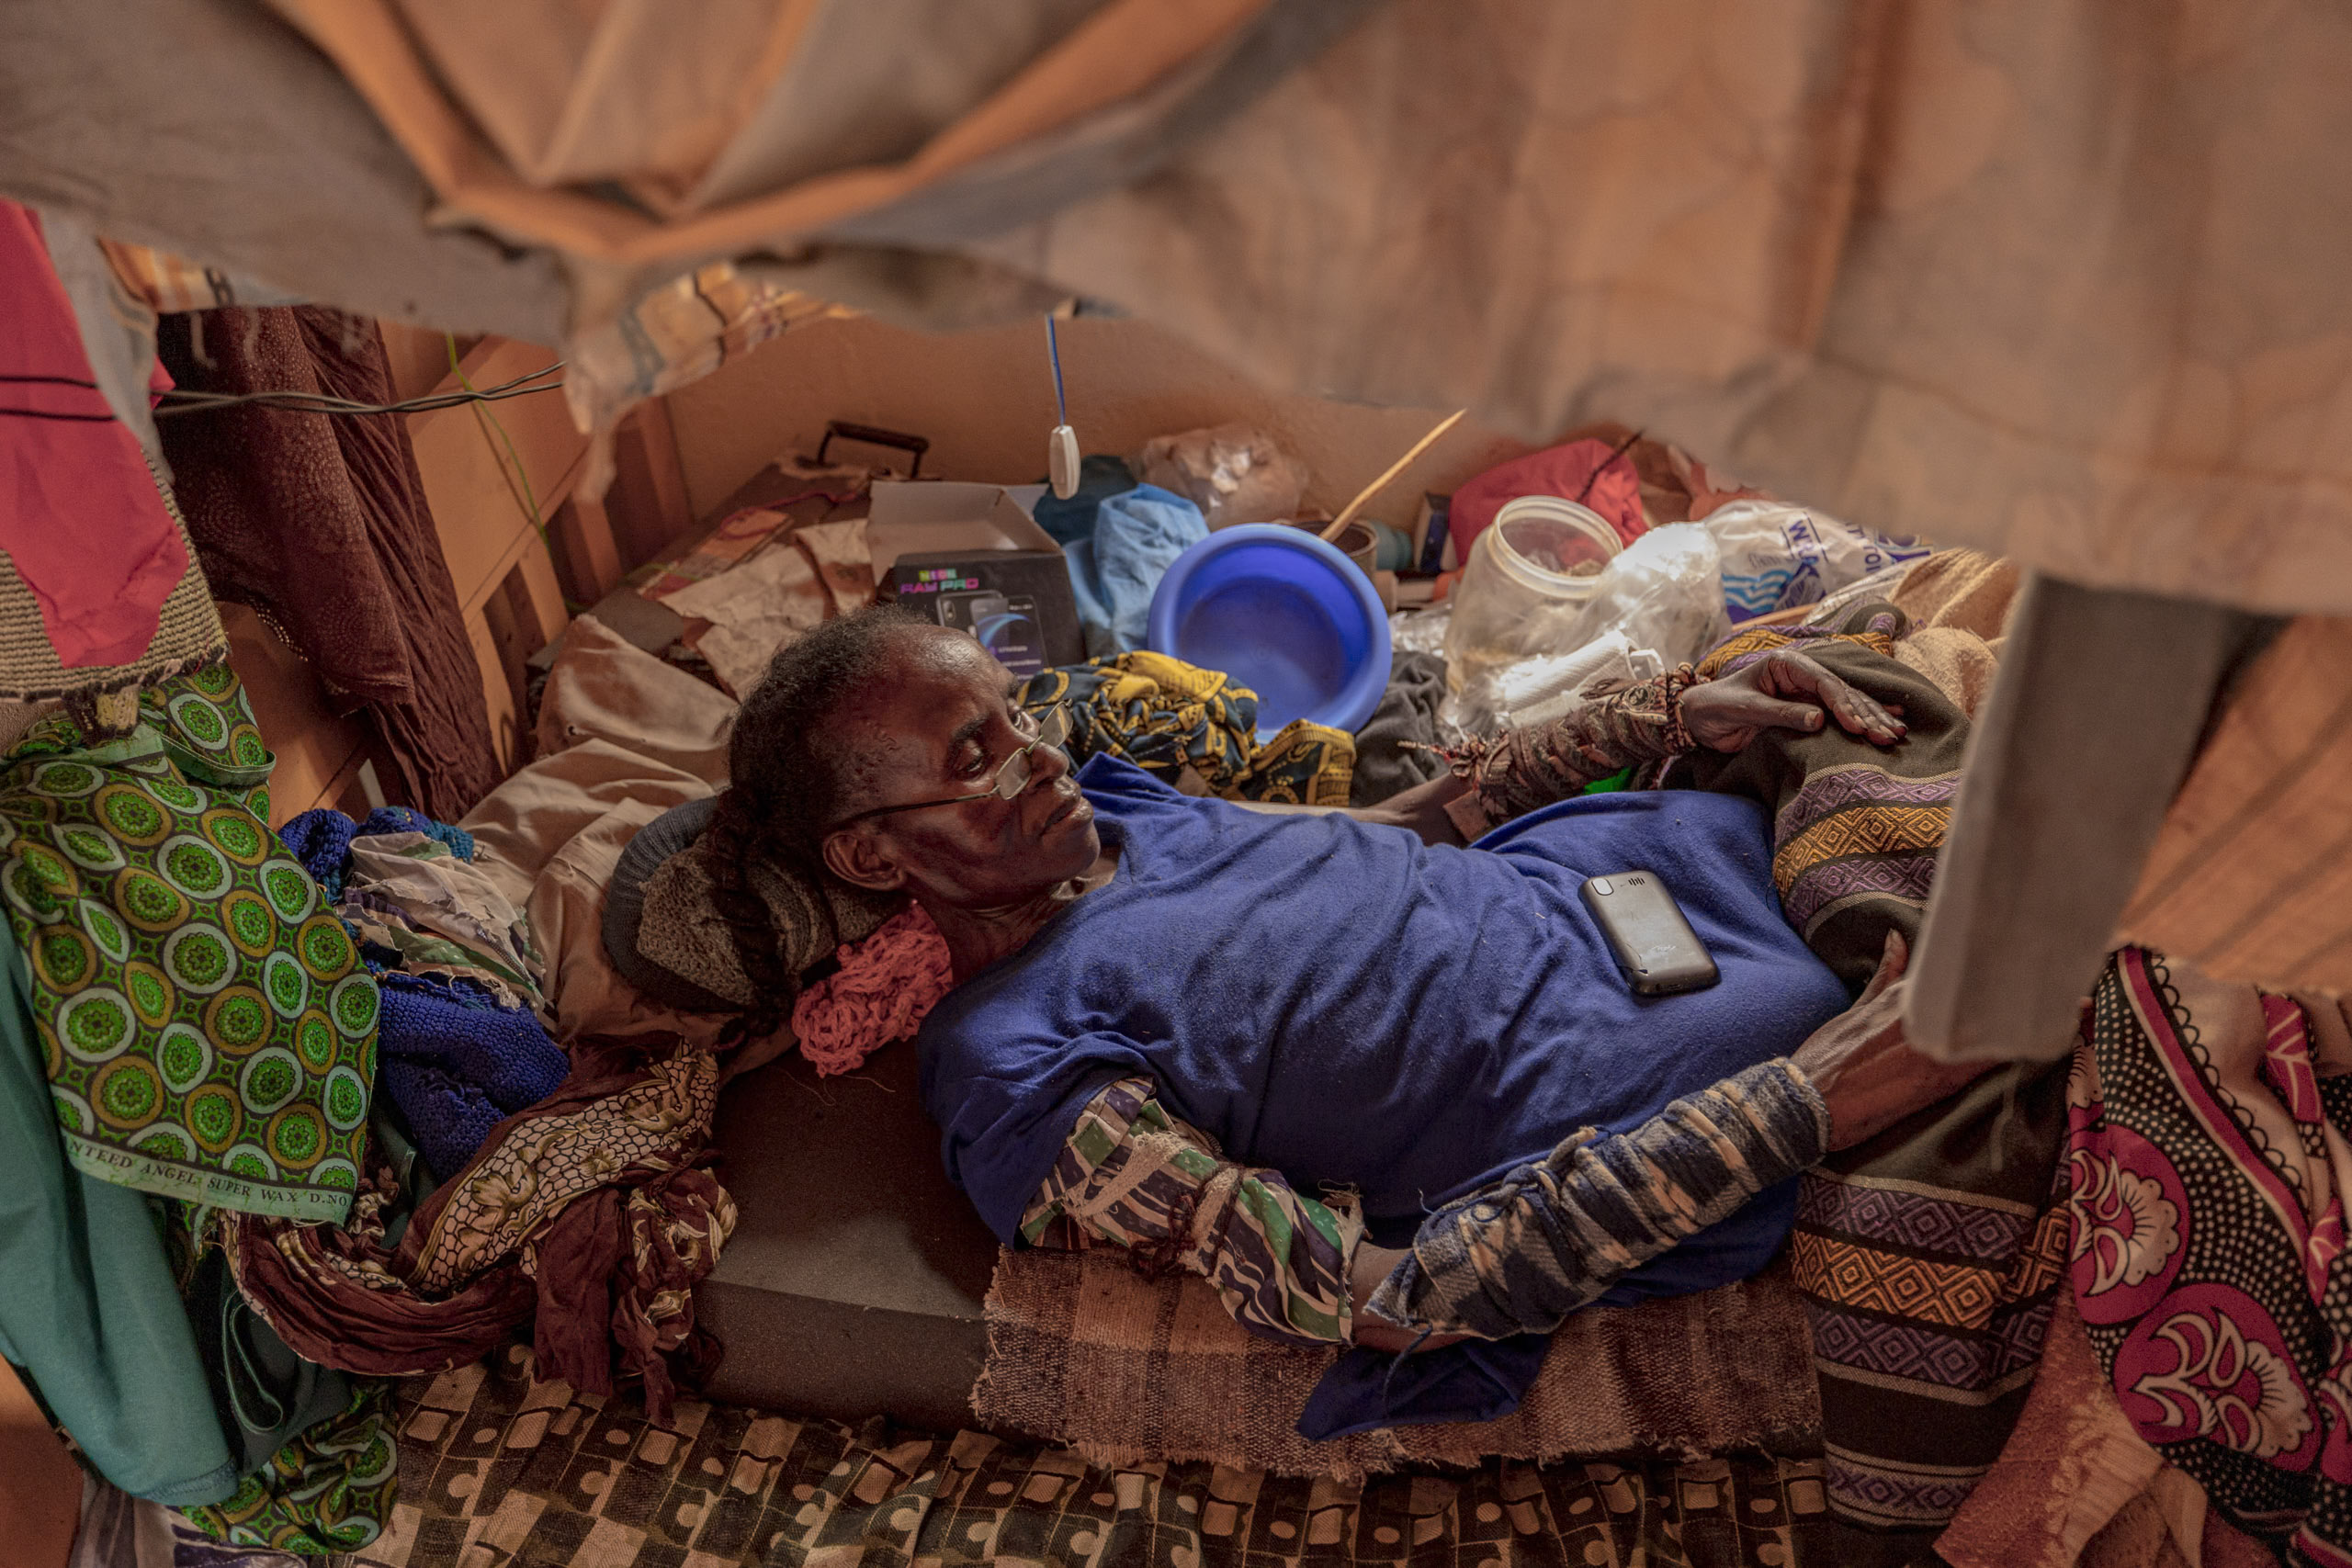 Eine ältere Frau liegt auf einem provisorischen Bett in einem engen Zelt, umgeben von persönlichen Gegenständen und einem Eimer. Auf ihrer Brust ruht ein Mobiltelefon. Die Atmosphäre ist düster und chaotisch. © Fotografie Tomas Rodriguez